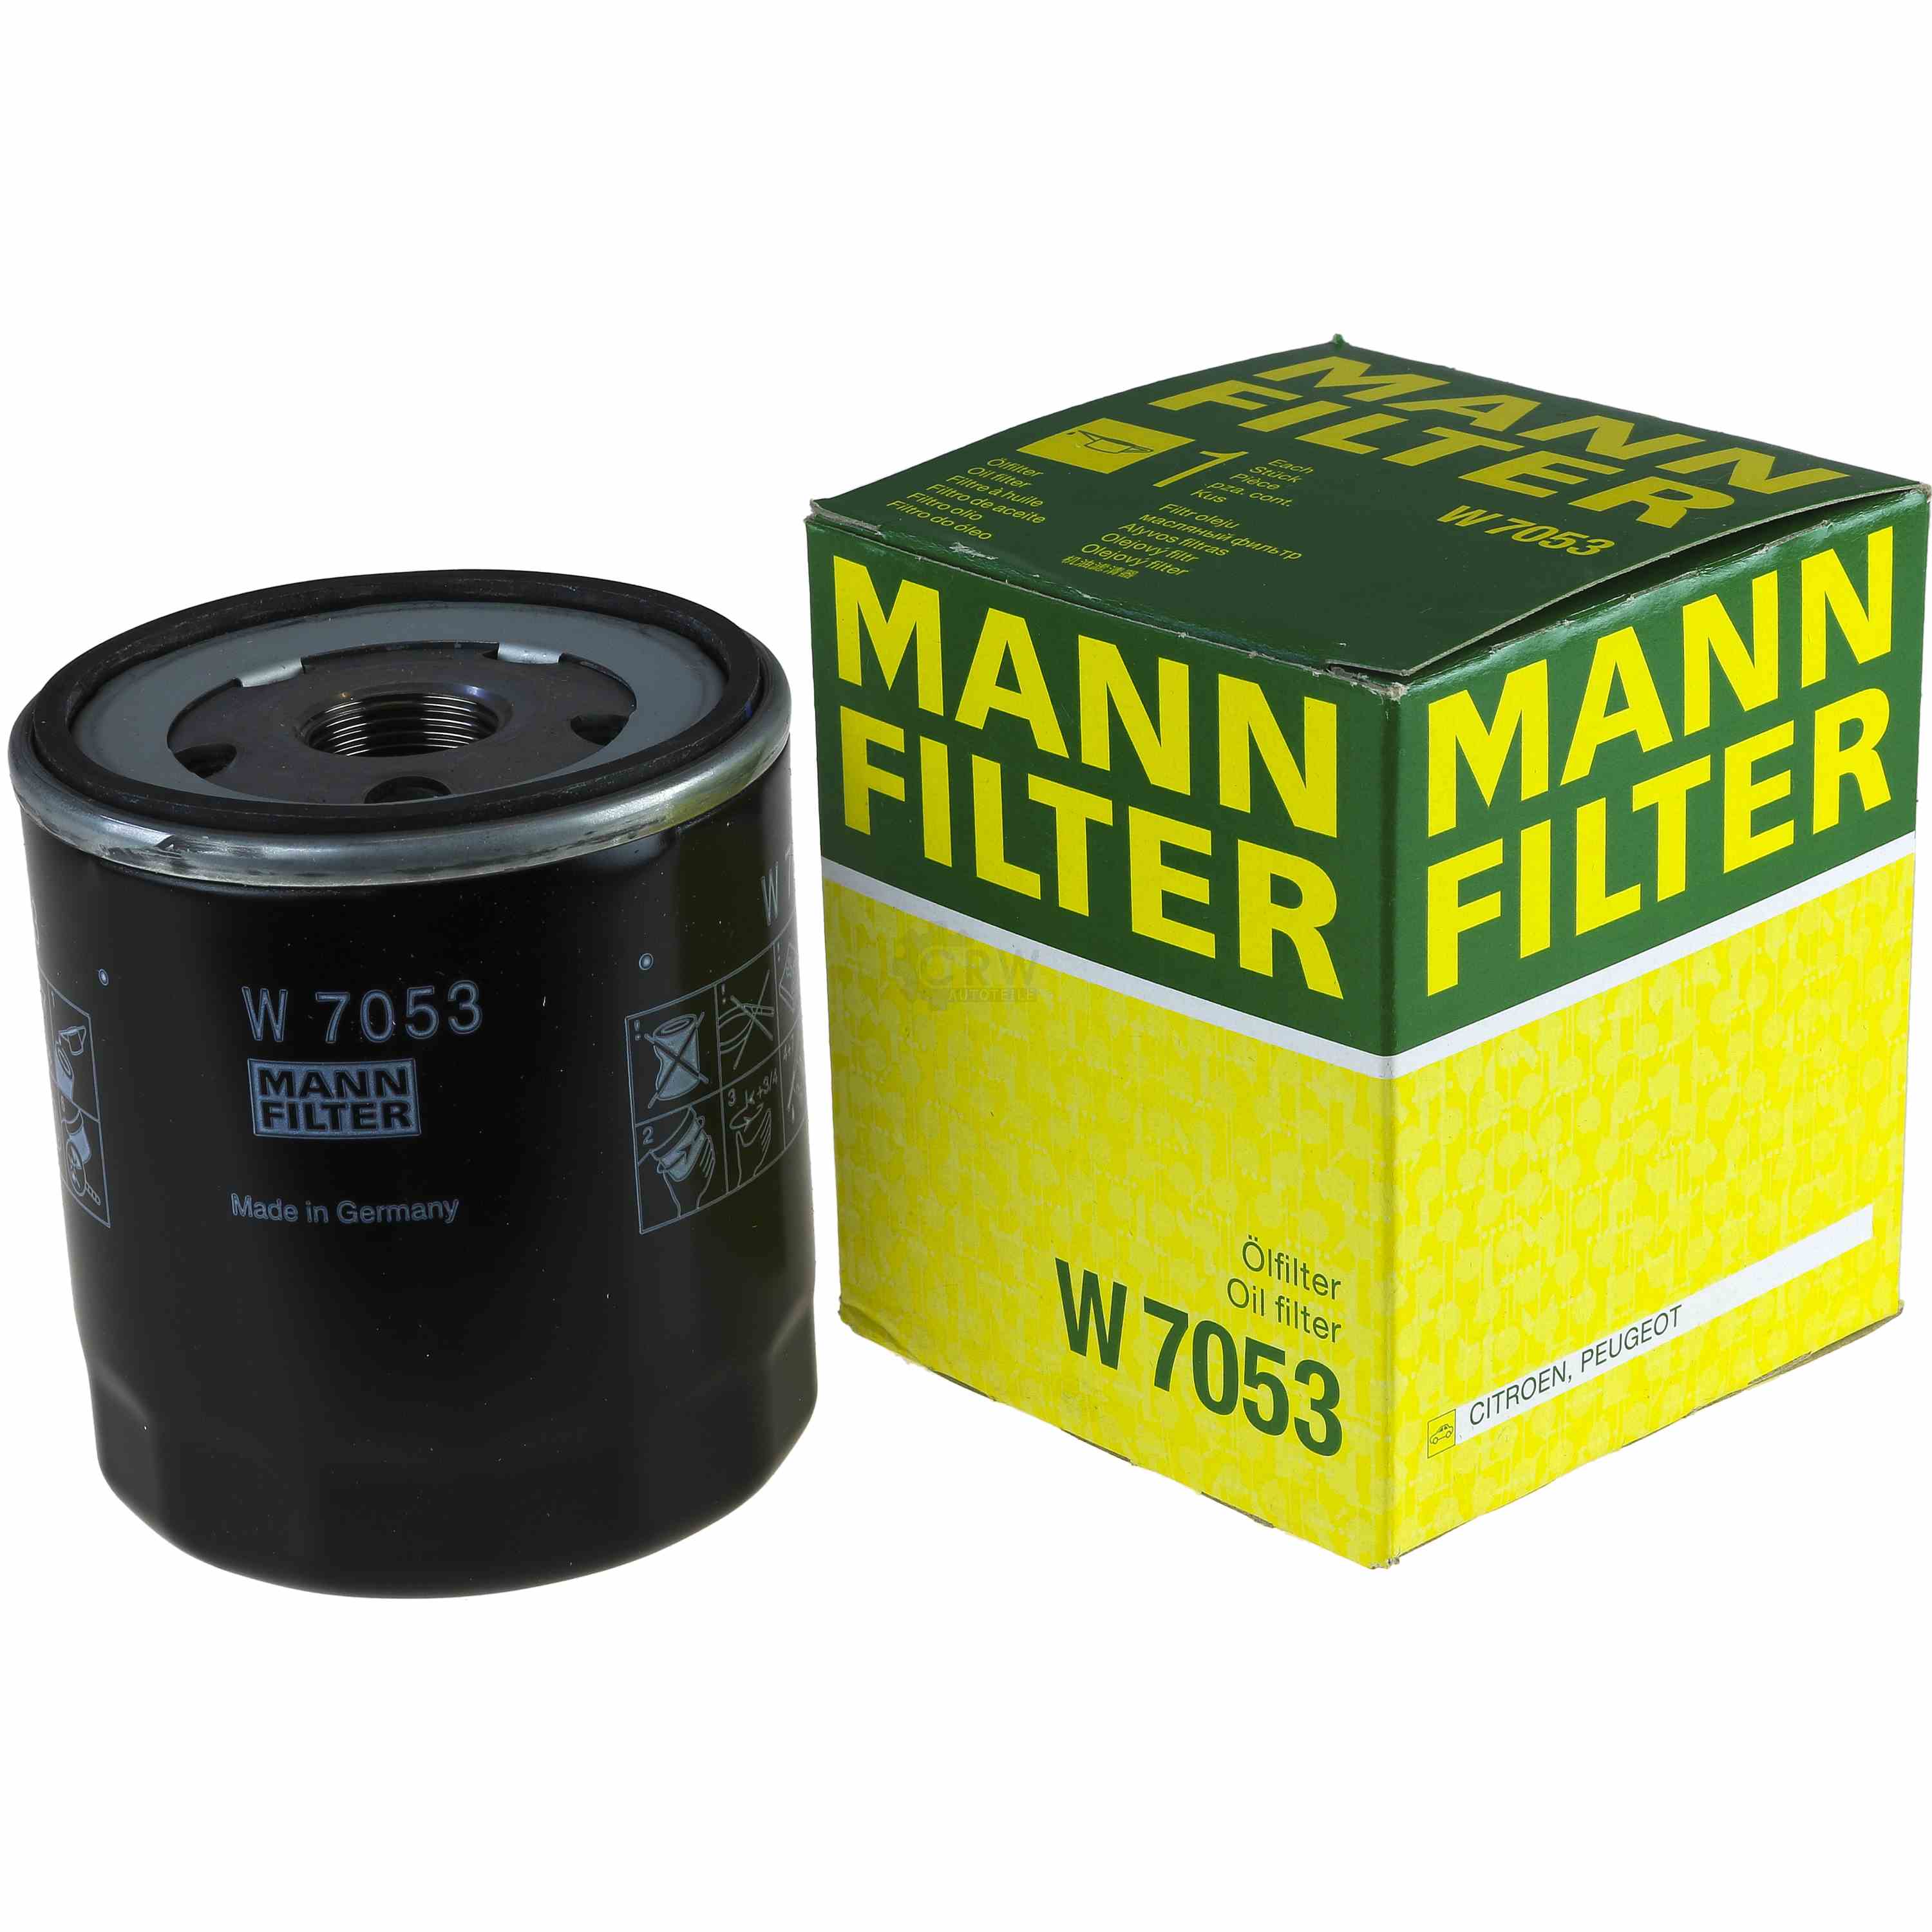 MANN-FILTER Ölfilter W 7053 Oil Filter